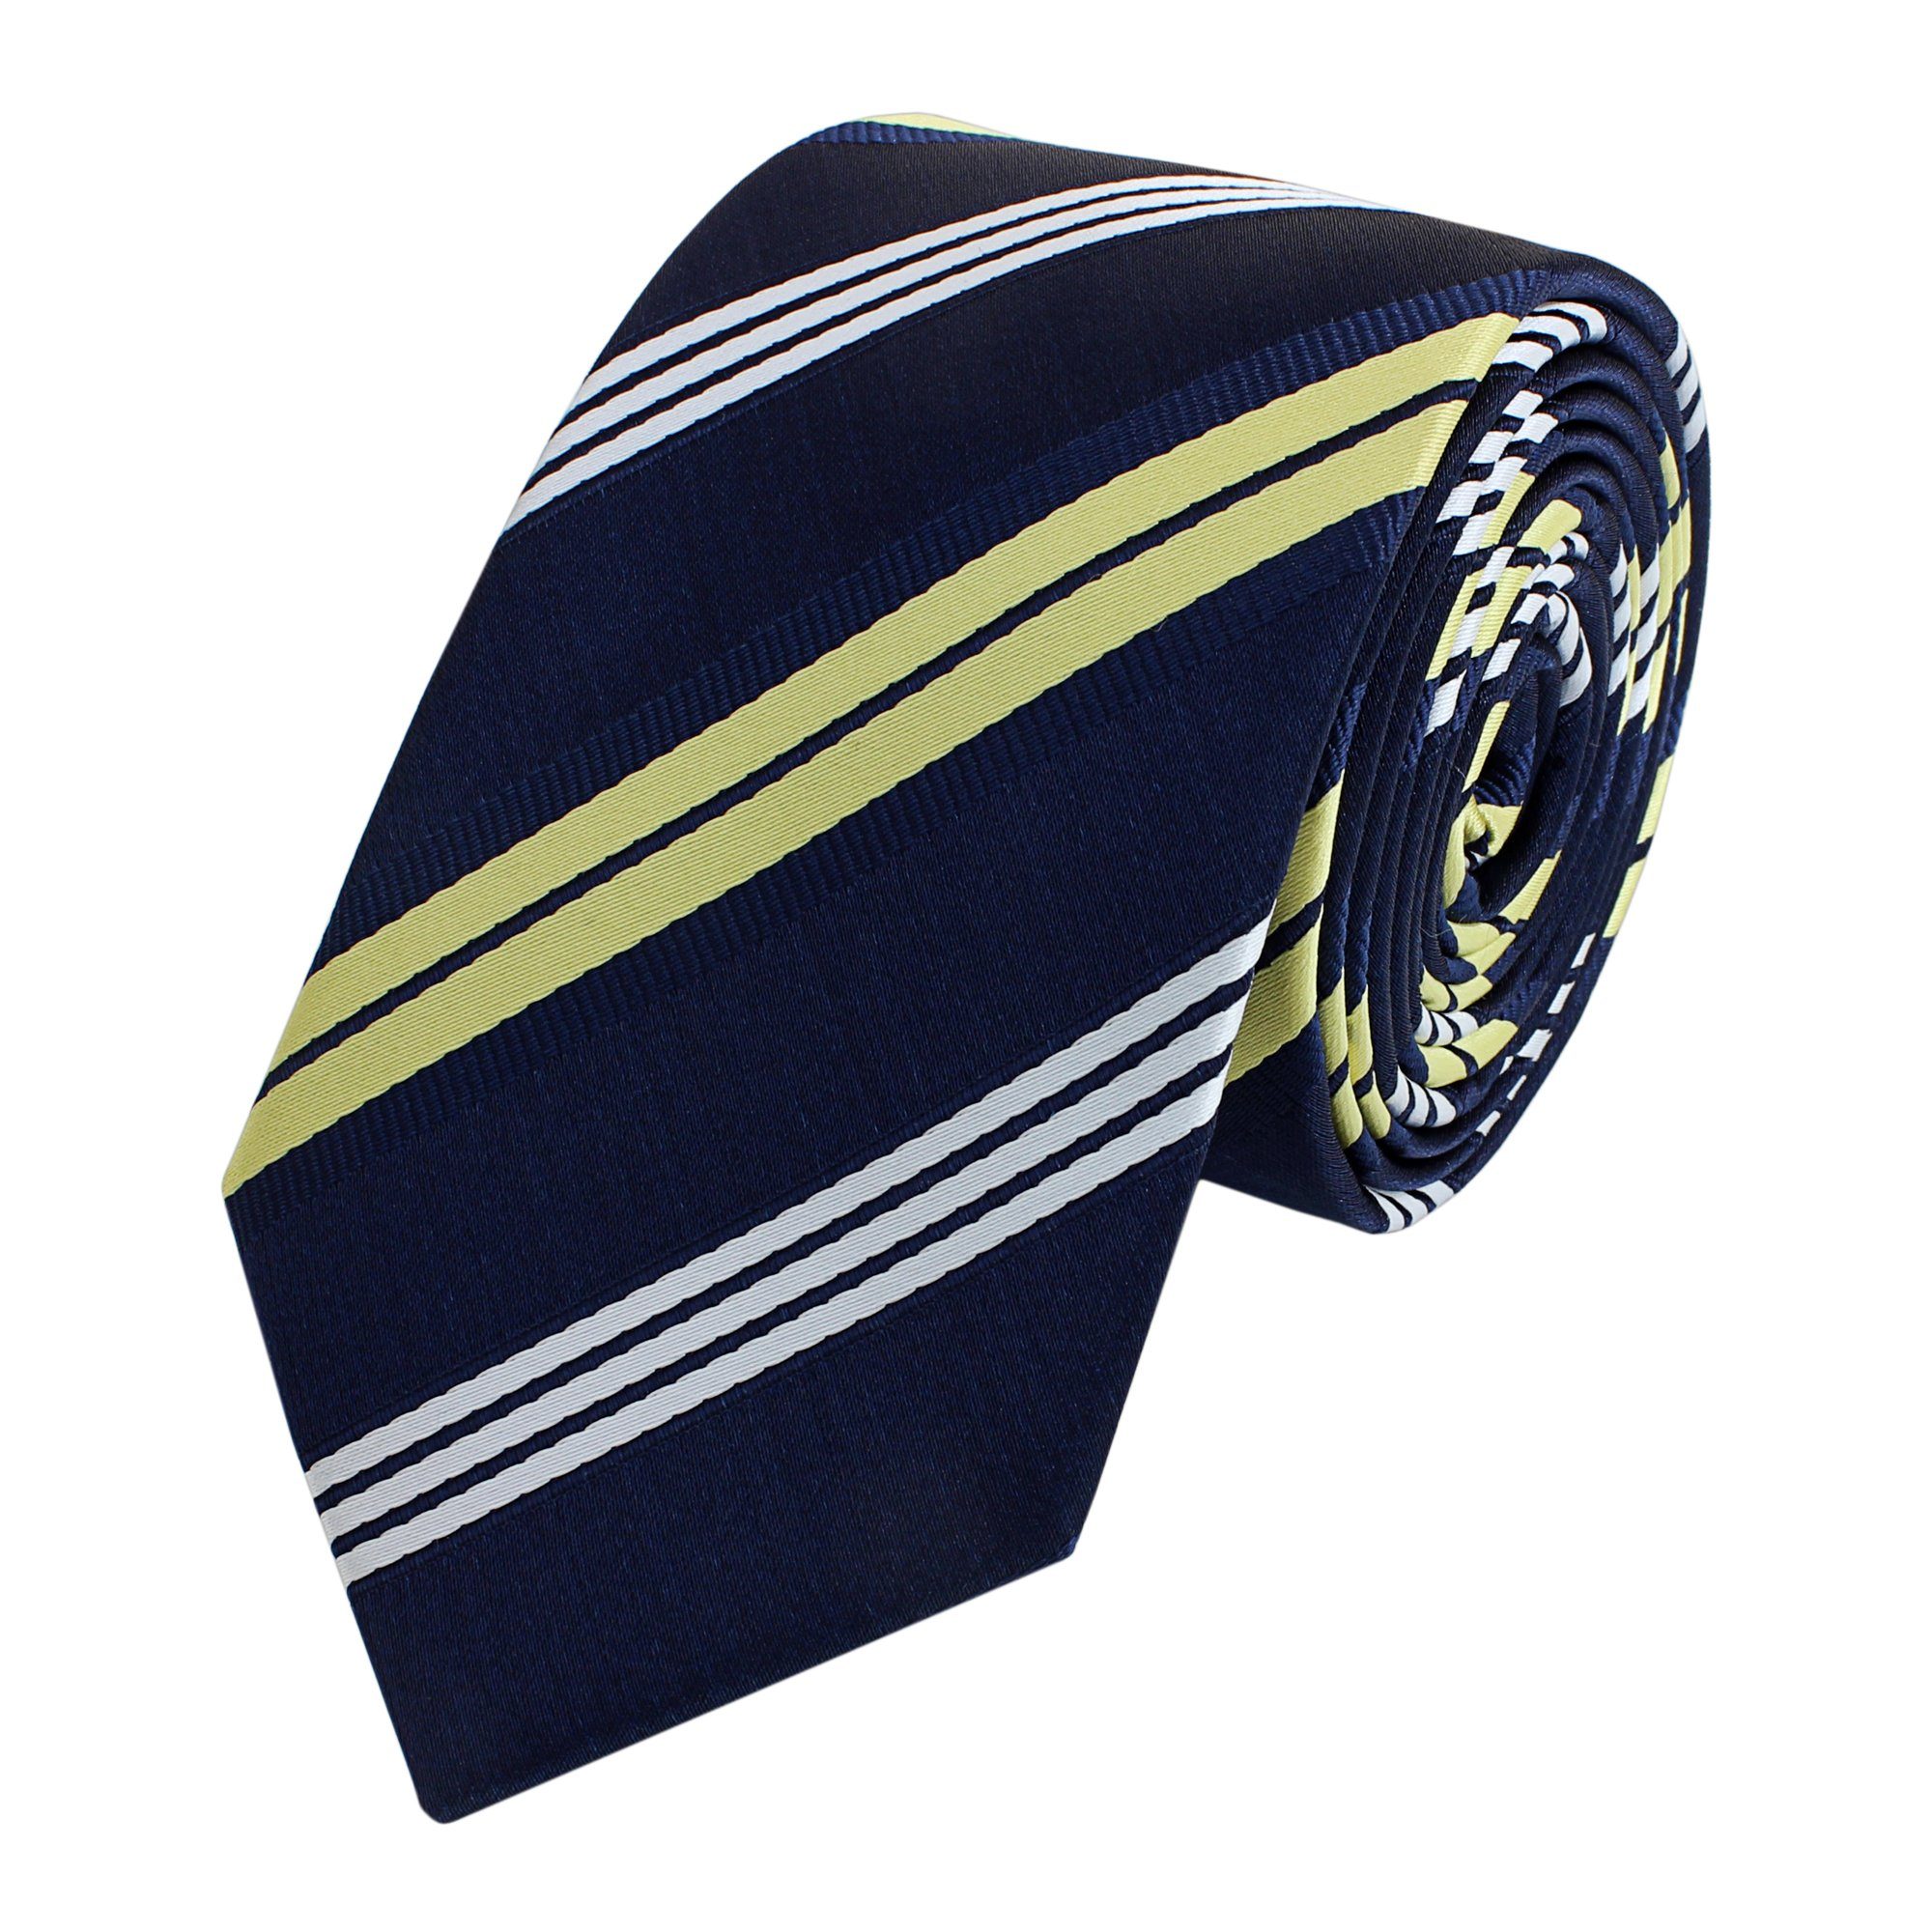 Fabio Farini Krawatte gestreifte Herren Krawatte - Tie mit Streifen in 6cm oder 8cm Breite (ohne Box, Gestreift) Schmal (6cm), Blau/Gold/Weiß